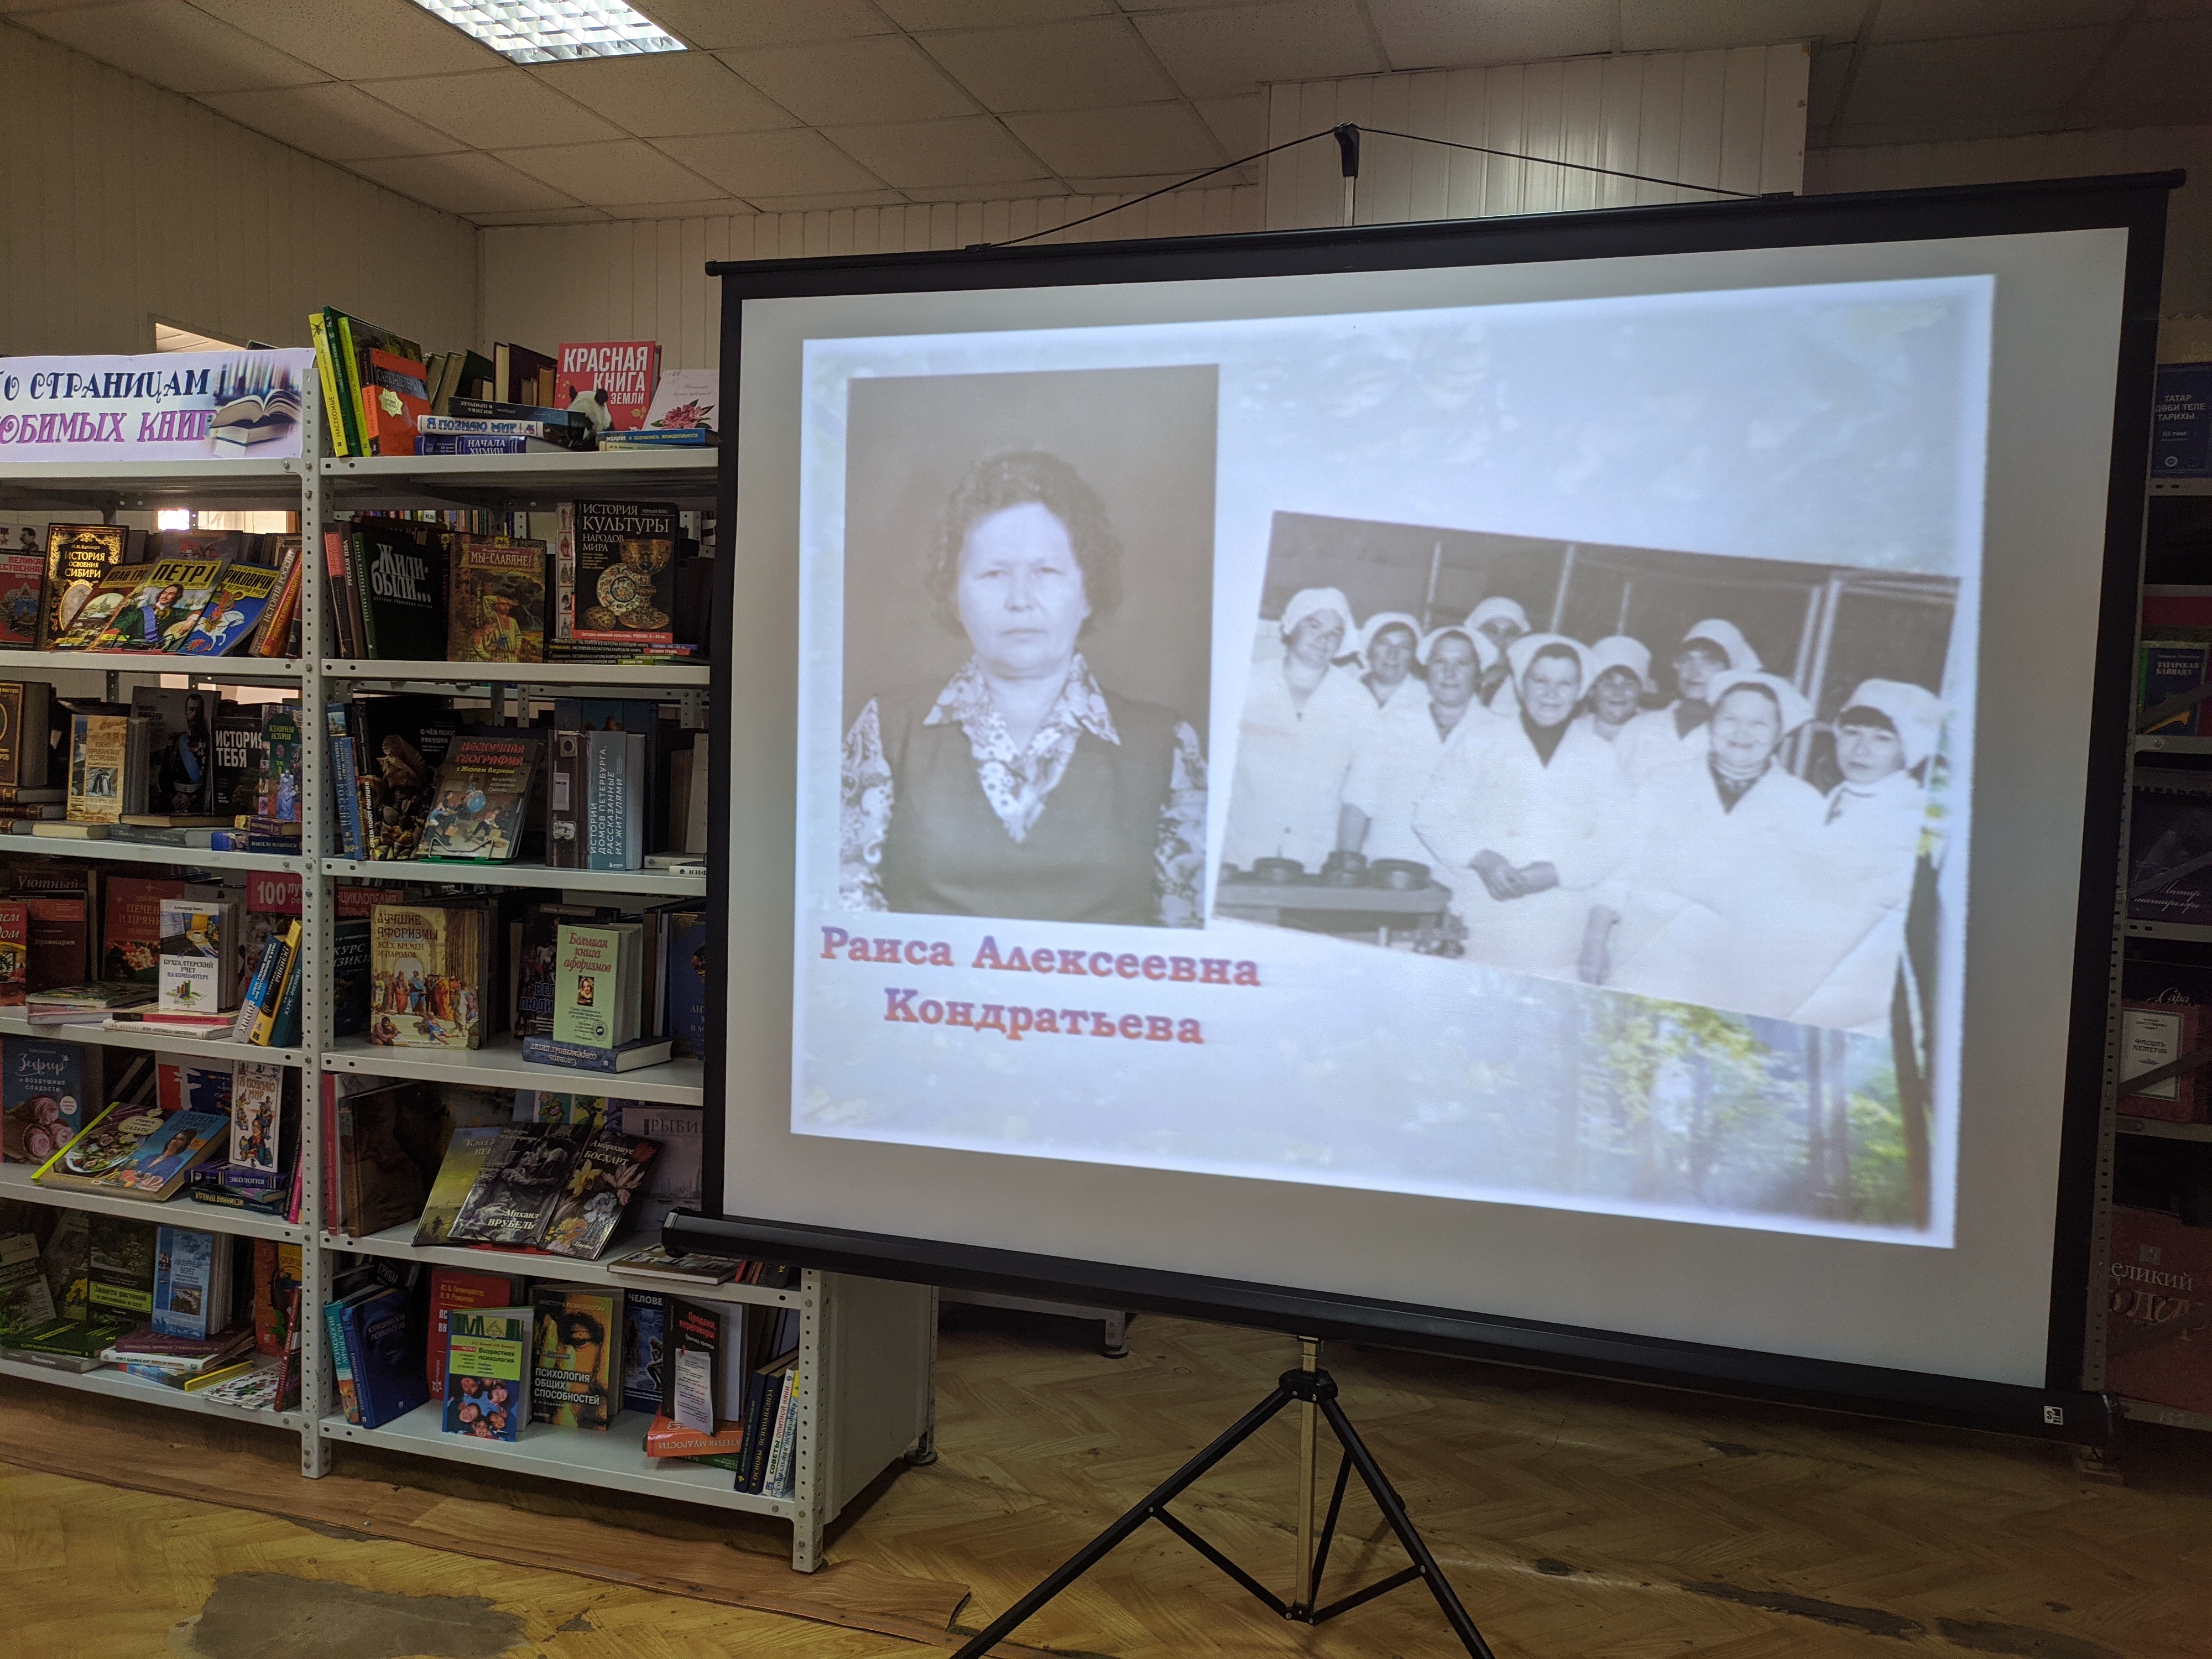 Презентация книг "Бизяевка" и "Маевка". авто Олег Евсеев. фото: Алсу Зиганьшина